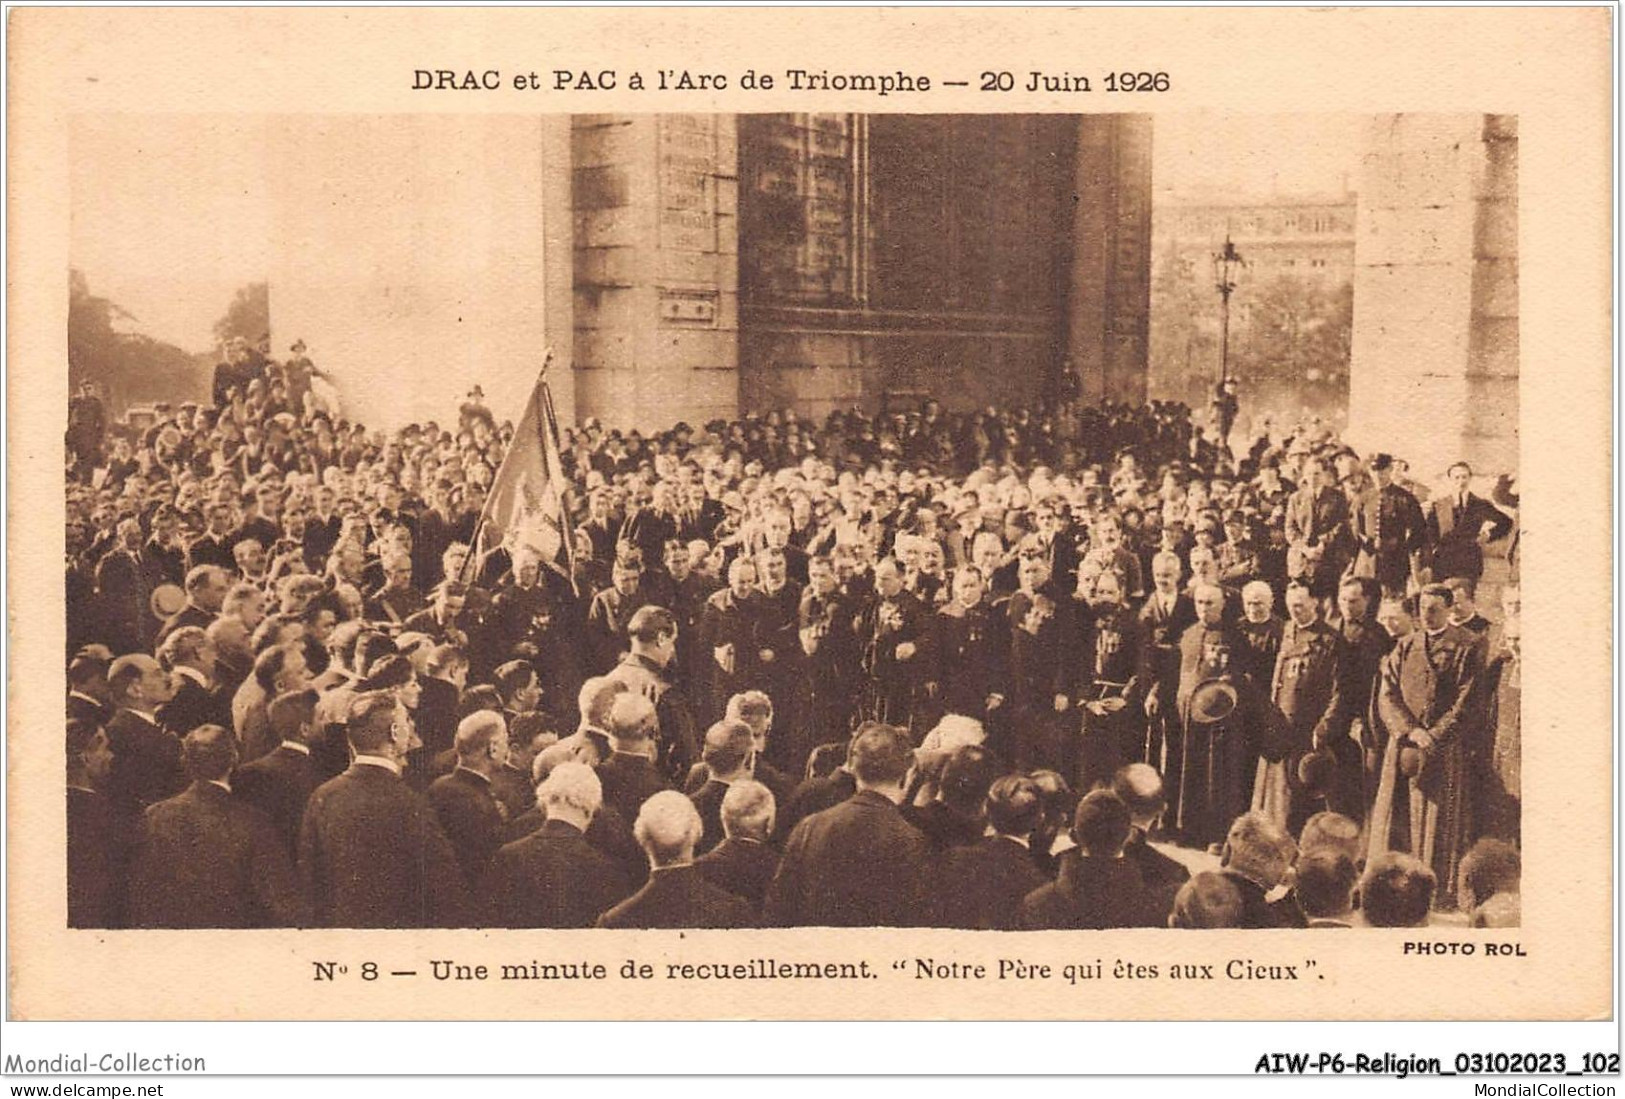 AIWP6-0628 - RELIGION - DRAC ET PAC A L'ARC DE TRIOMPHE - 20 JUIN 1926 - N*8 - UNE MINUTE DE RECUEILLEMENT  - Monumentos